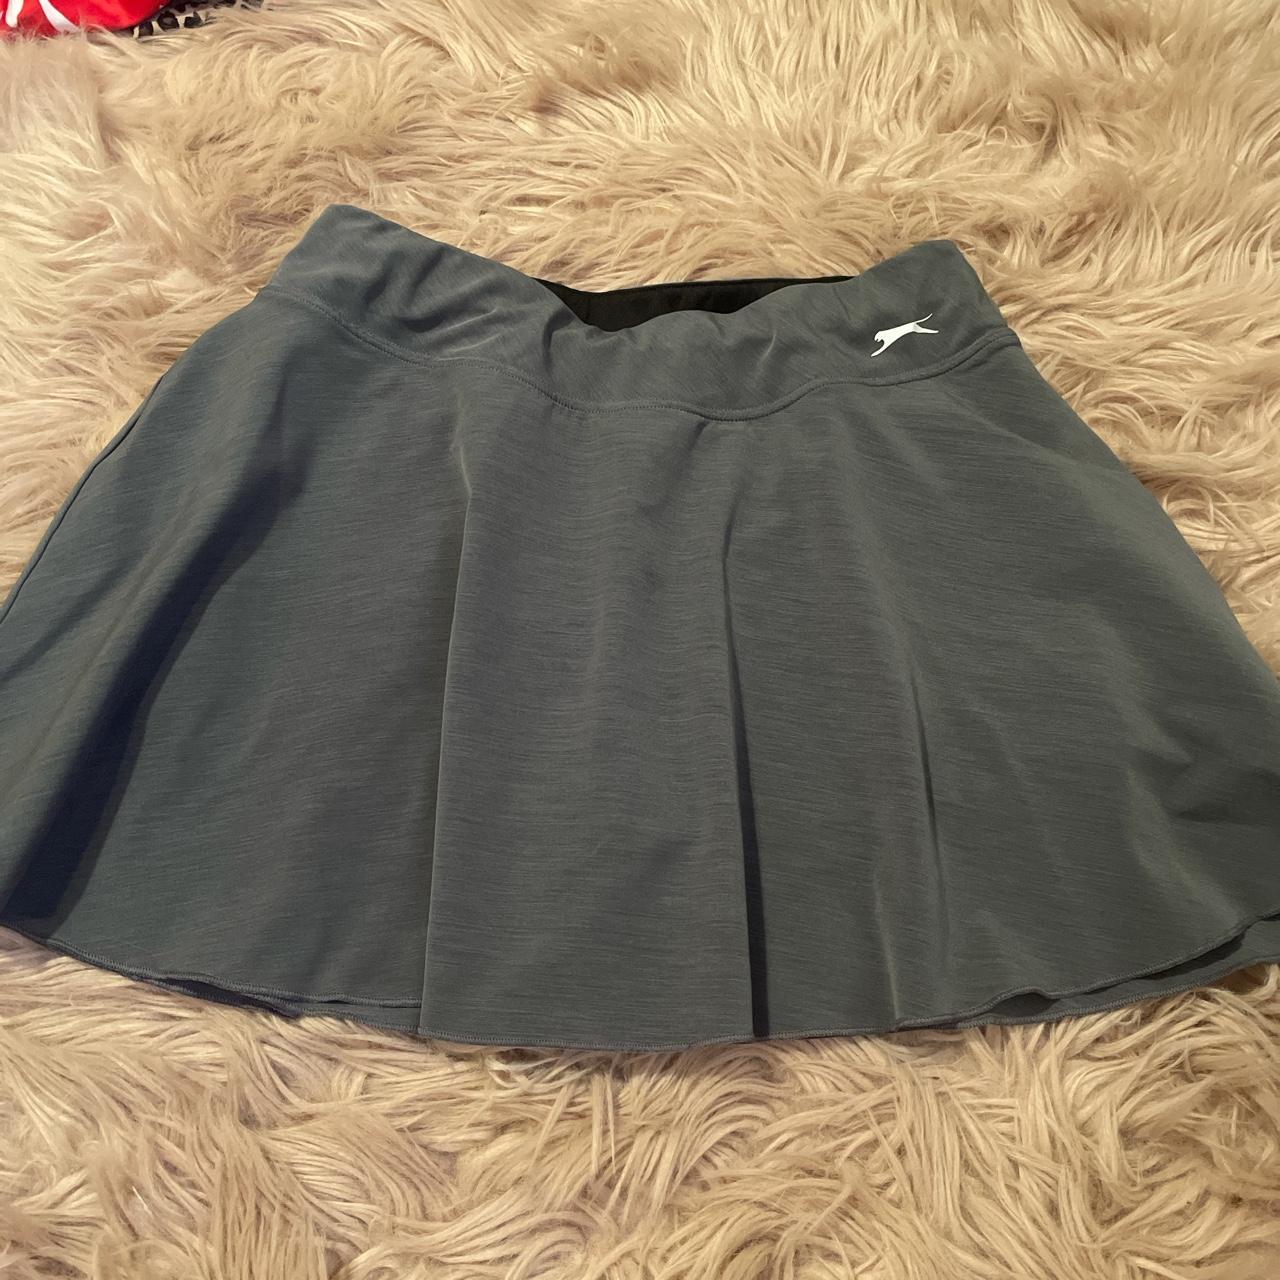 Slazenger Women's Grey Skirt